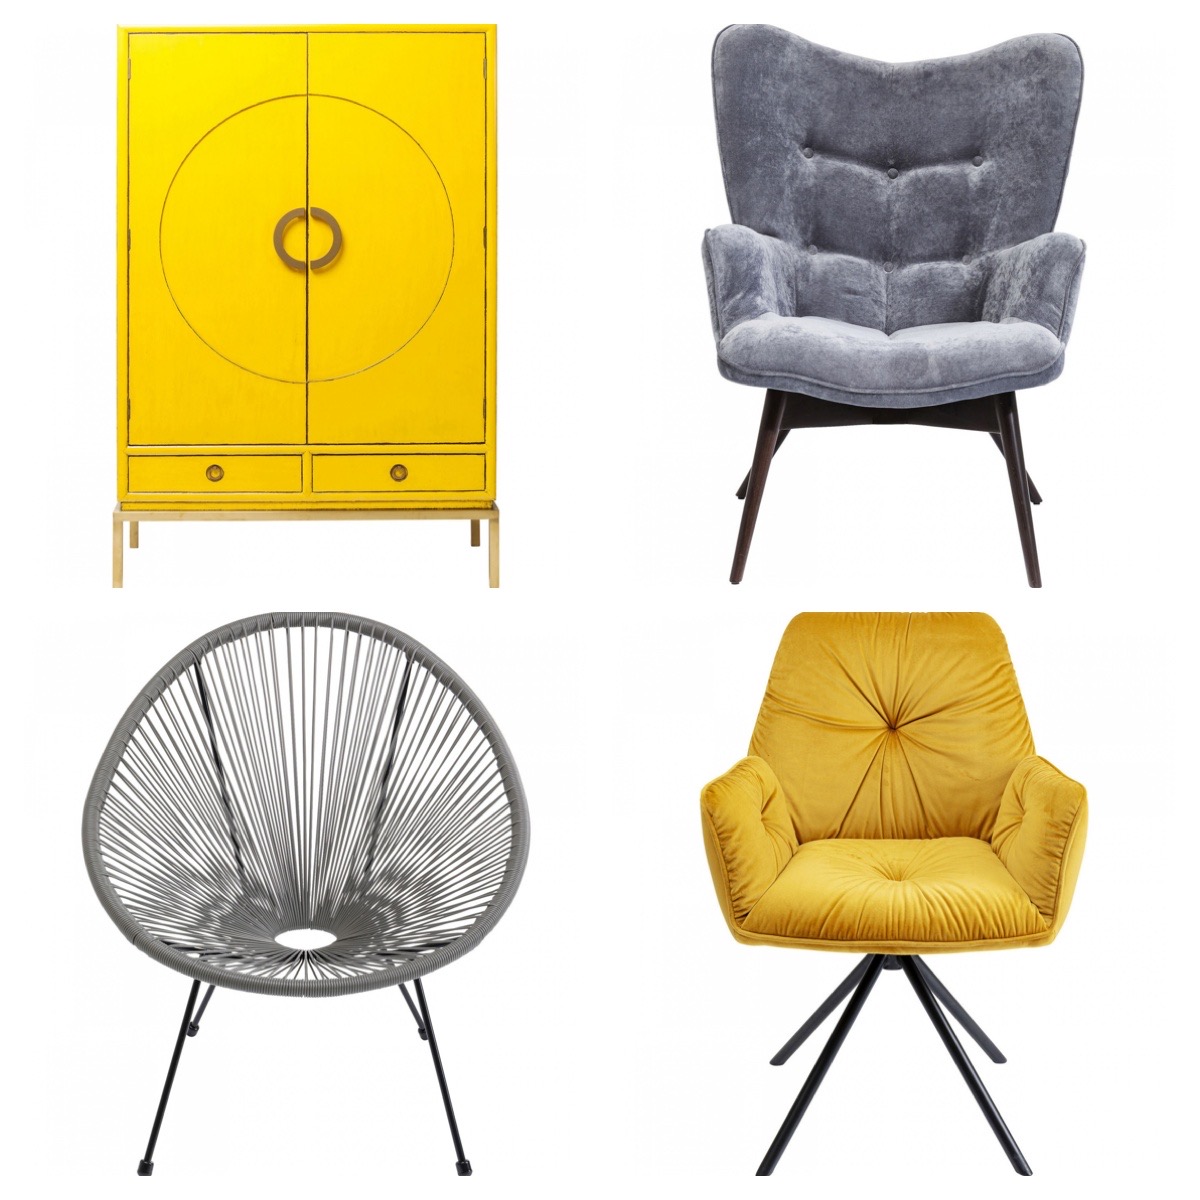 Oživte váš interiér trendy barvami! Roku 2021 bude vládnout sytě žlutá a šedá!